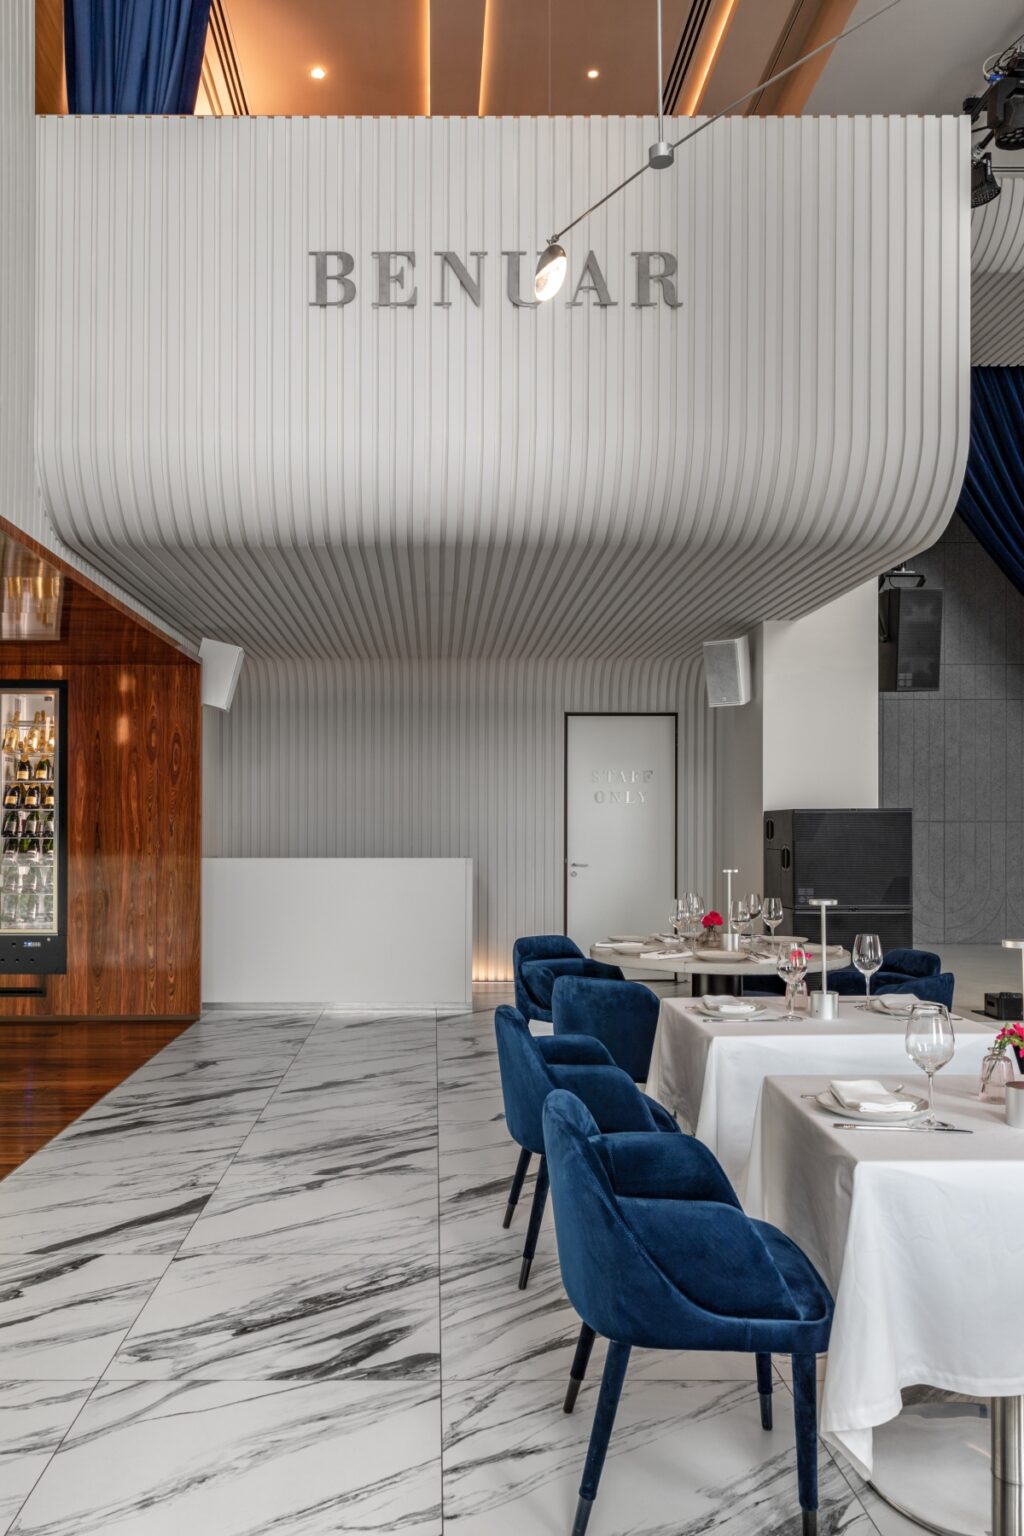 Ресторан BENUAR е елеганцијата на Арт Деко со блескав допир на поп-арт